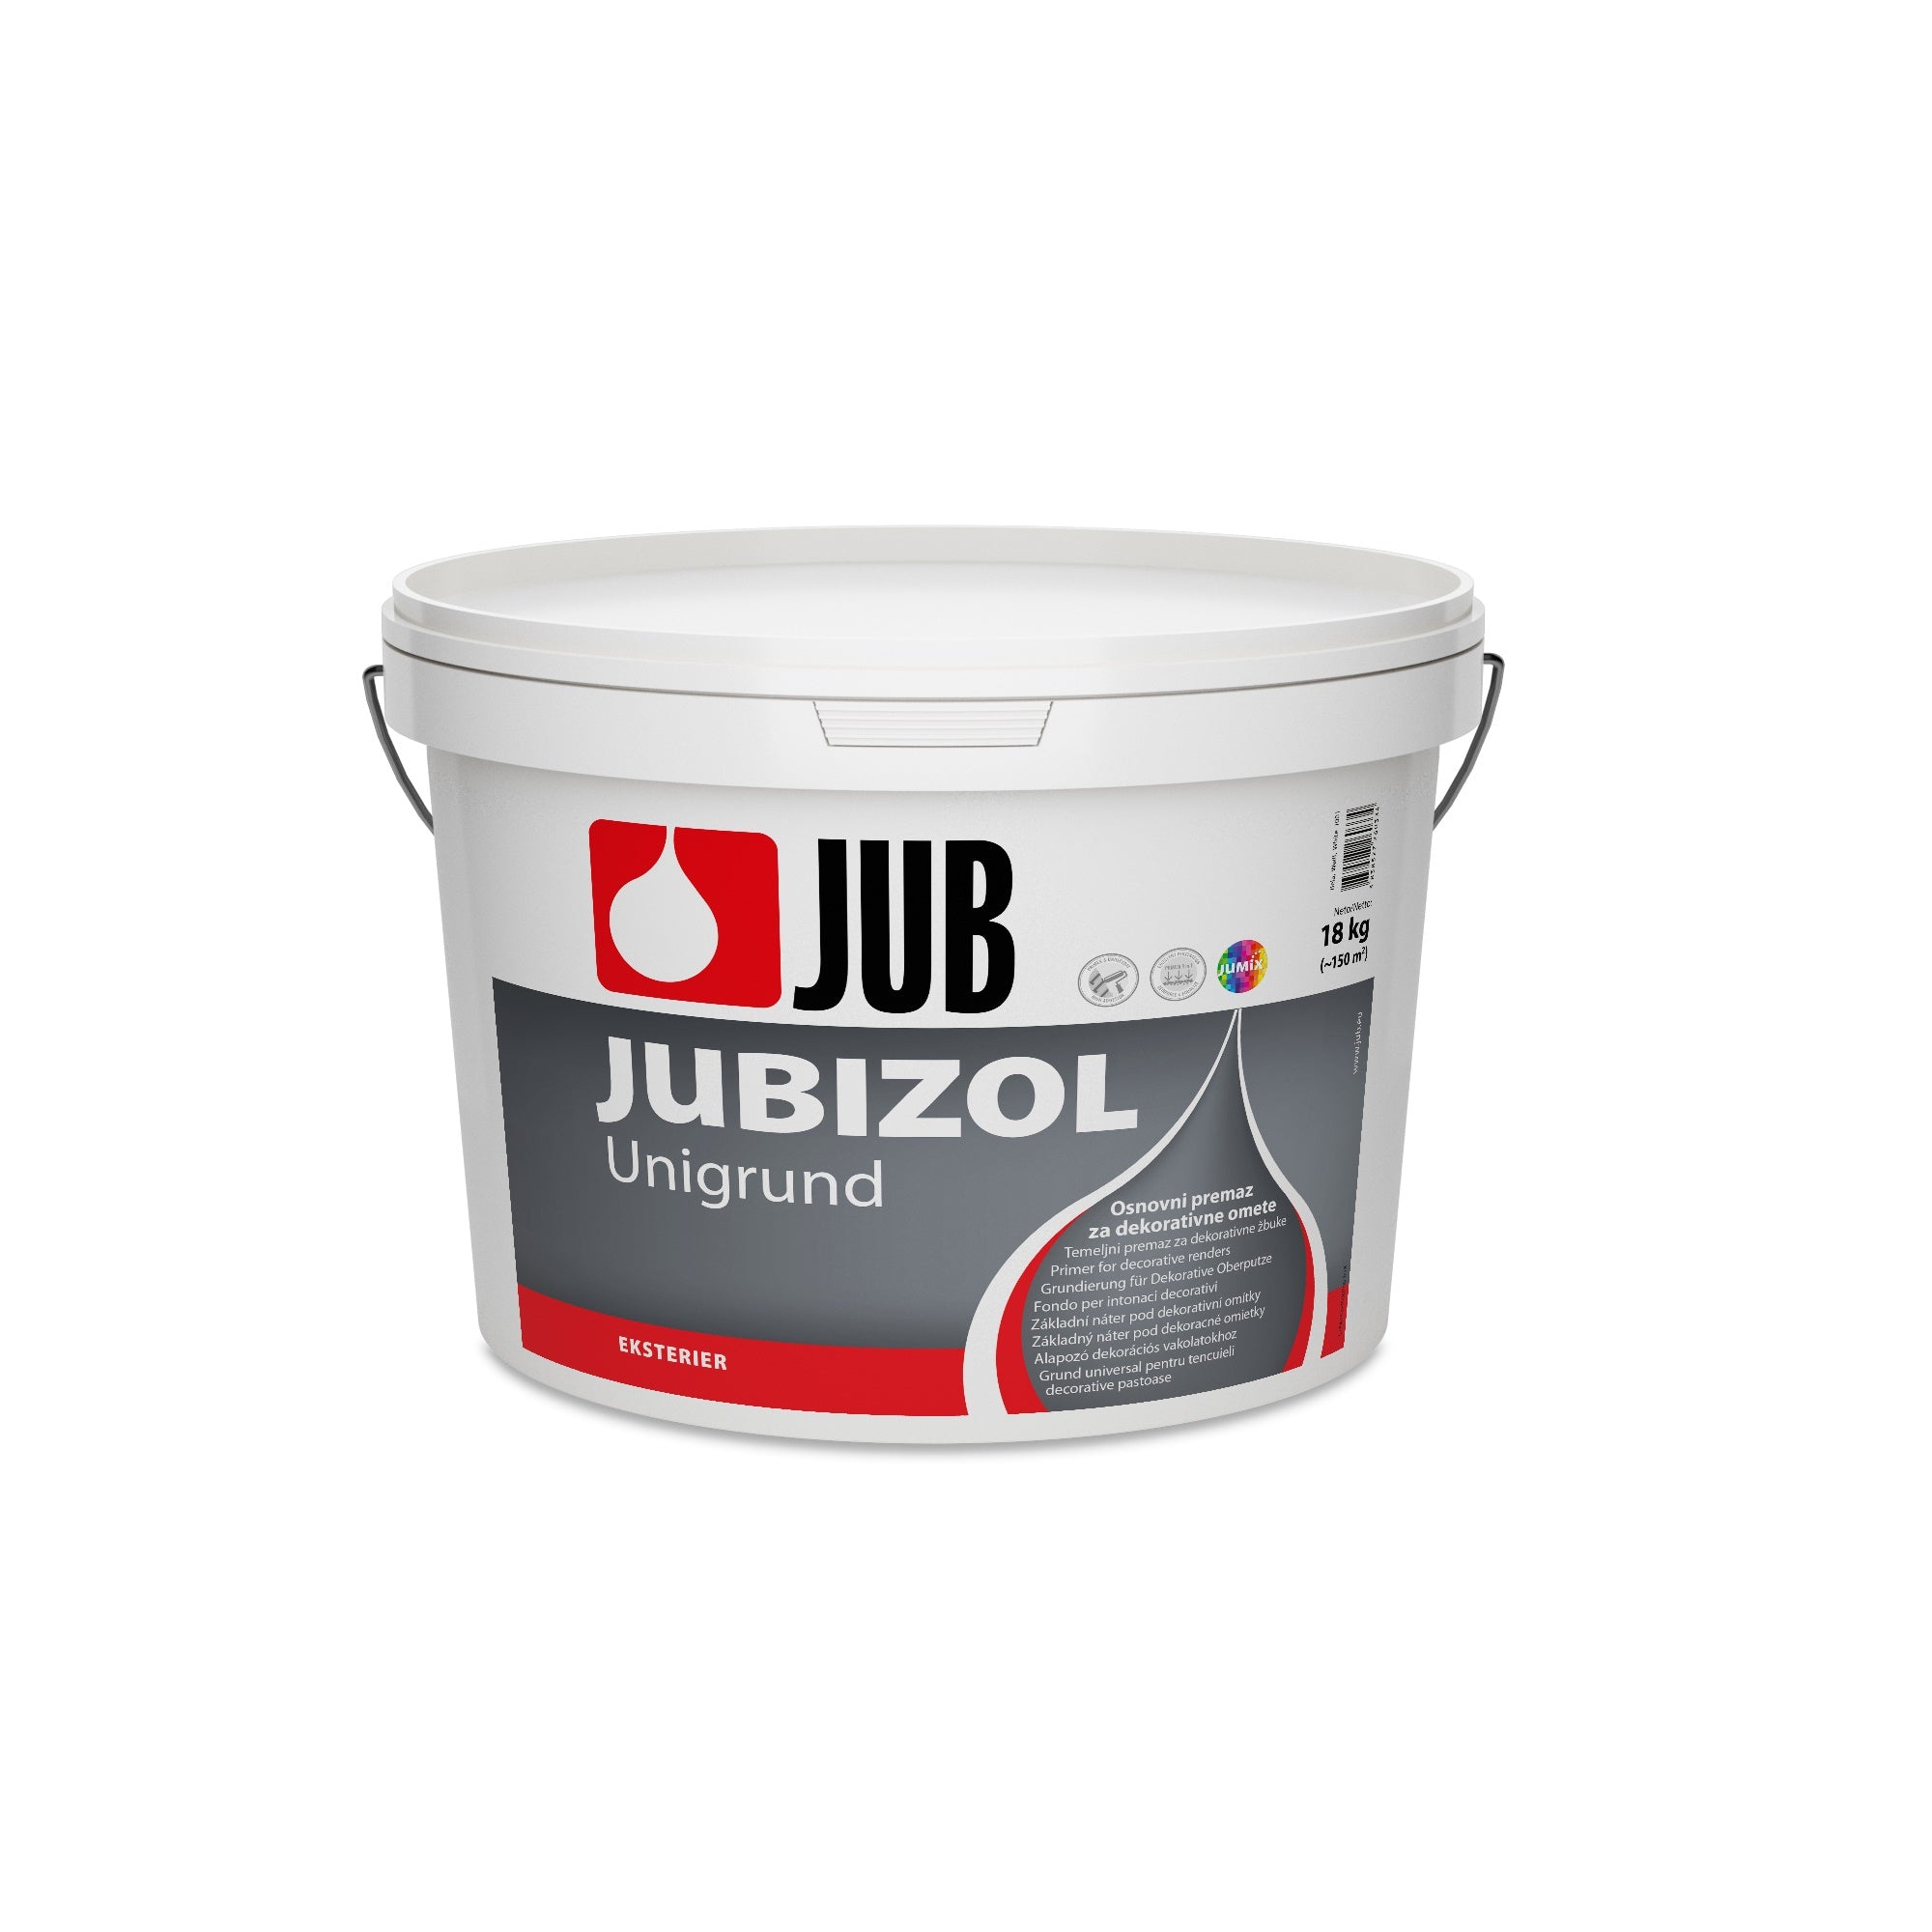 JUB JUBIZOL Unigrund bílý univerzální základní nátěr 2 kg